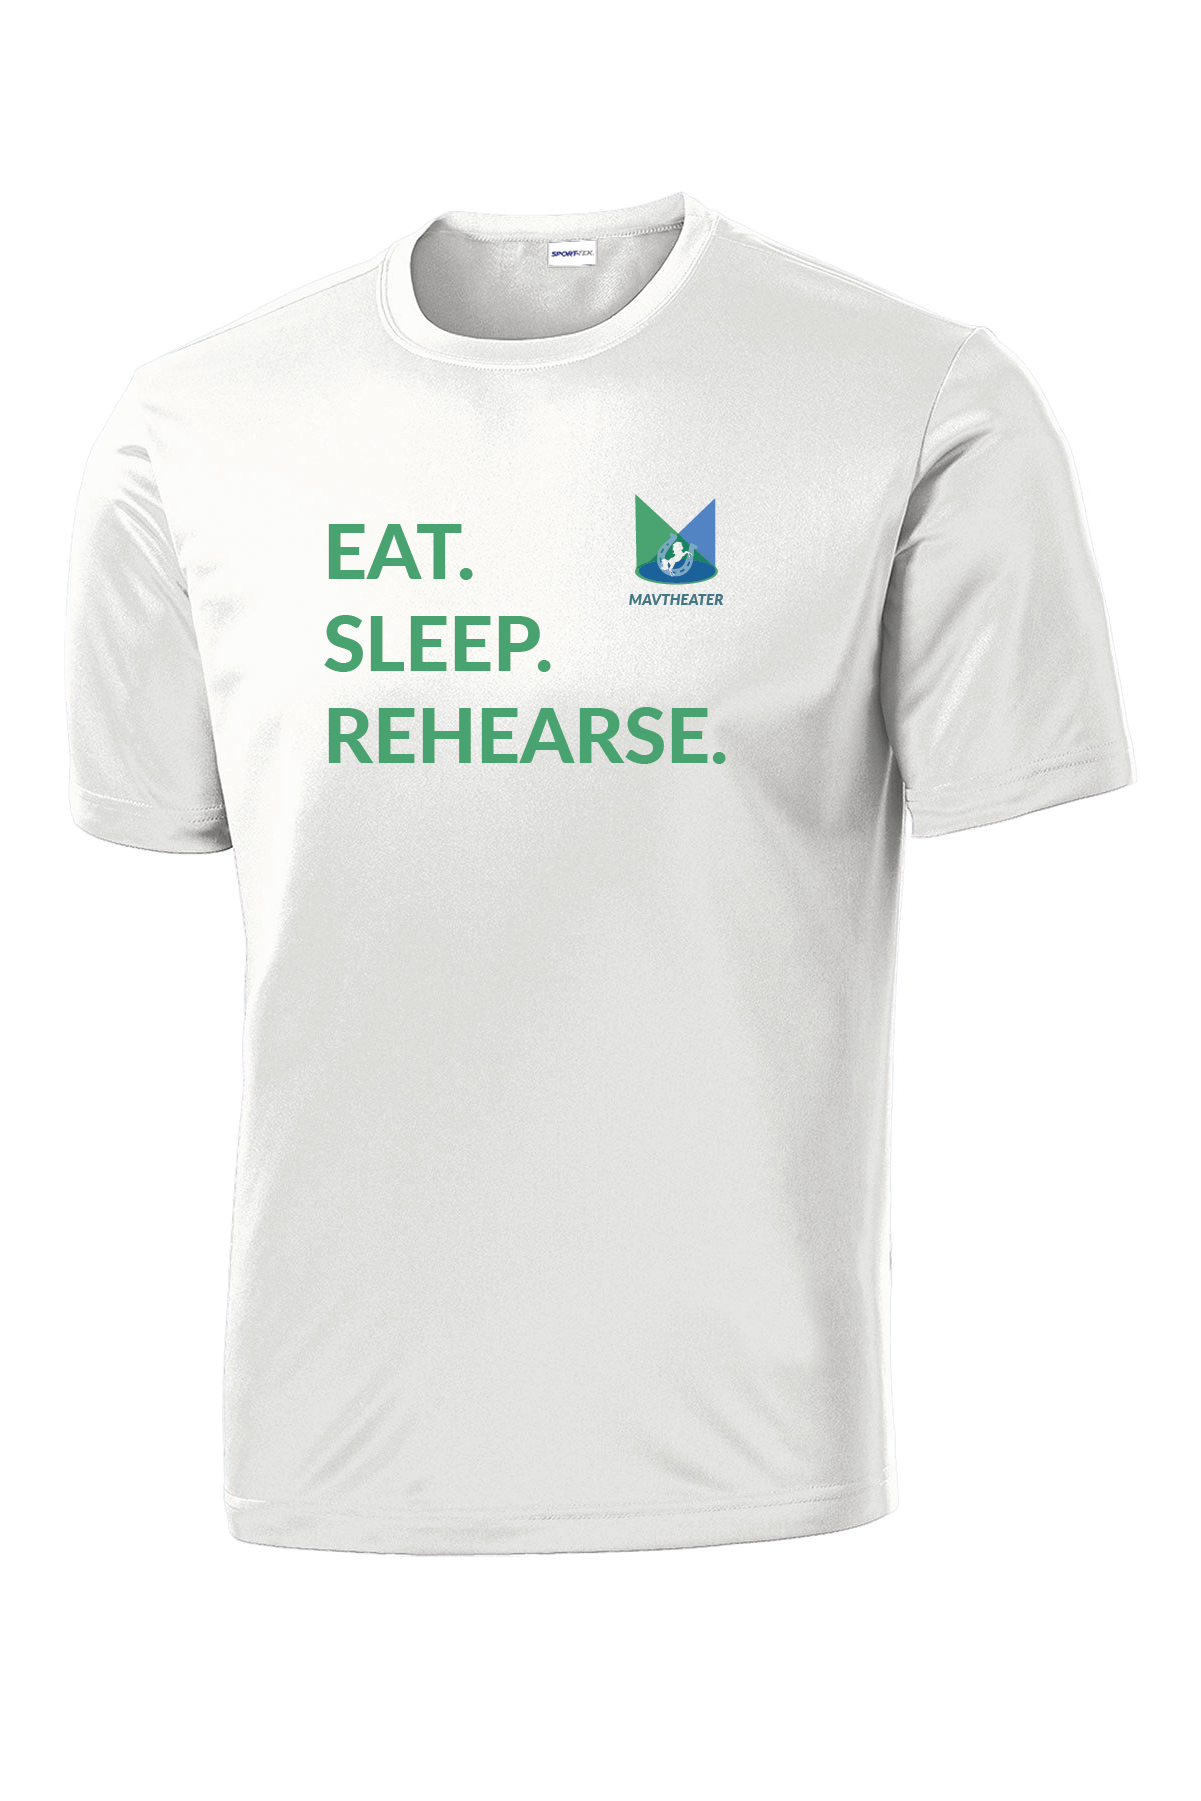 MavTheater Eat Sleep Rehearse T-Shirt